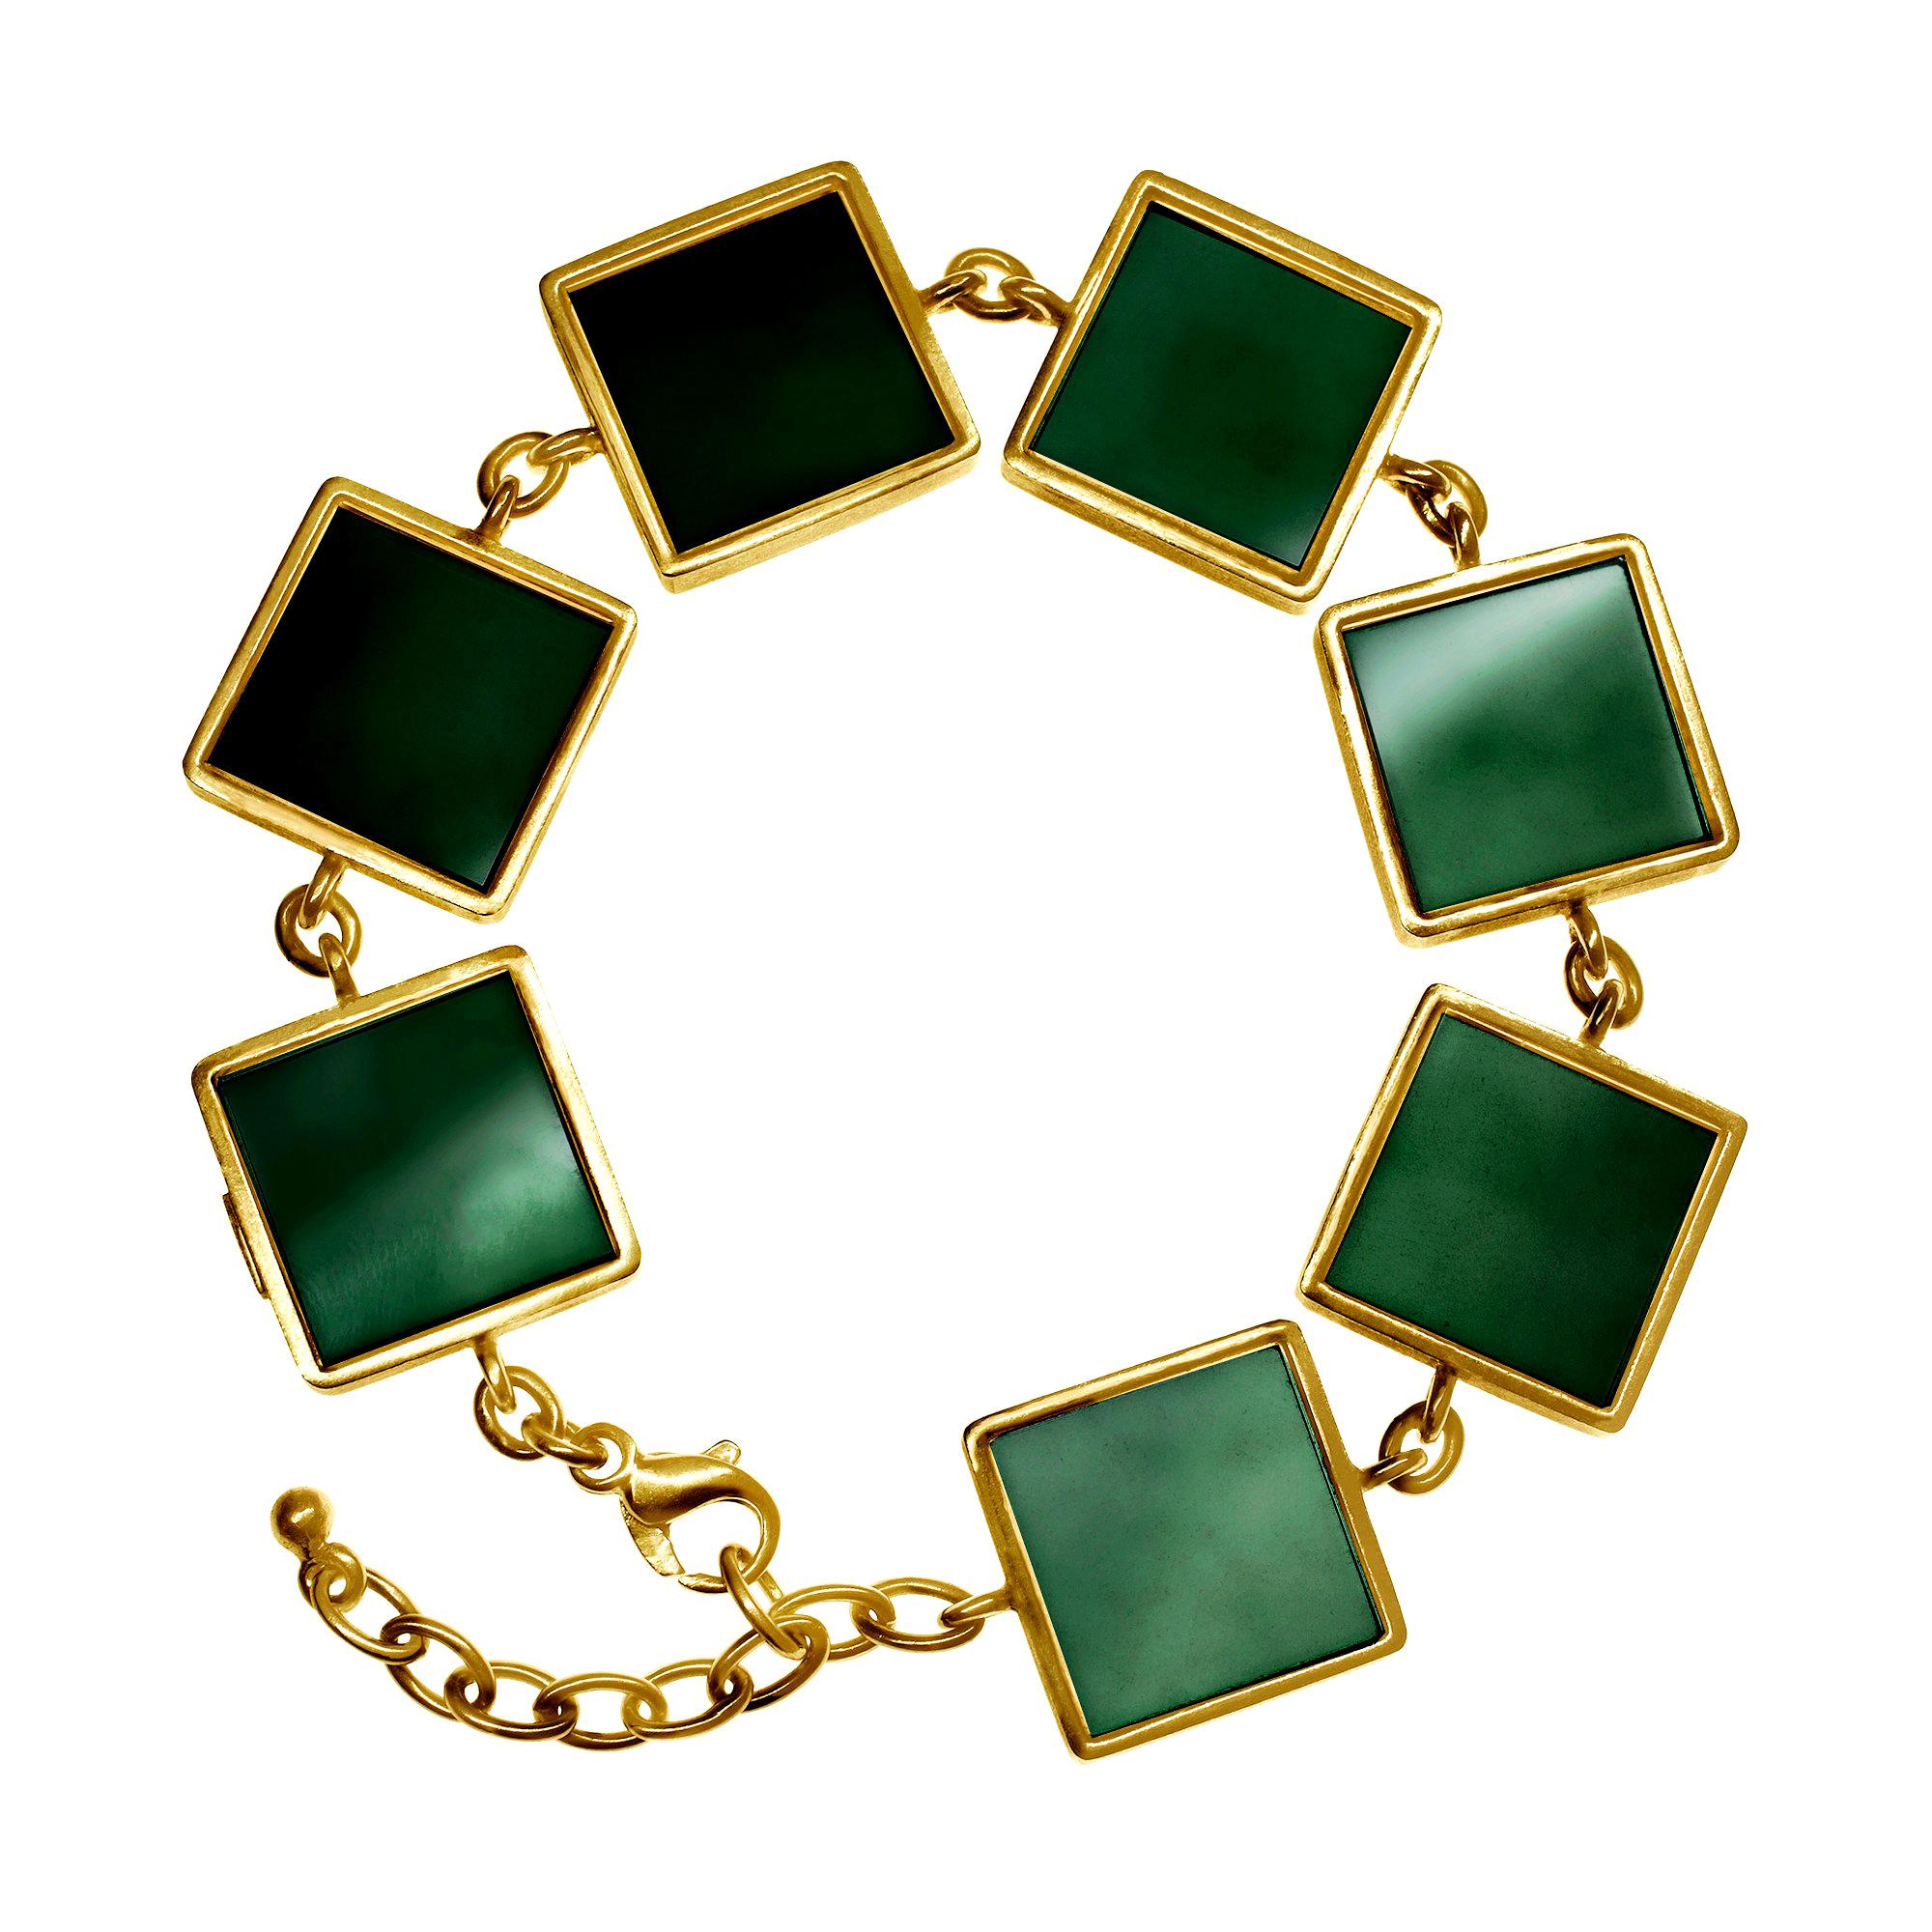 Featured in Vogue 14 Karat Gold Art Deco Style Bracelet with Dark Green Quartz  For Sale